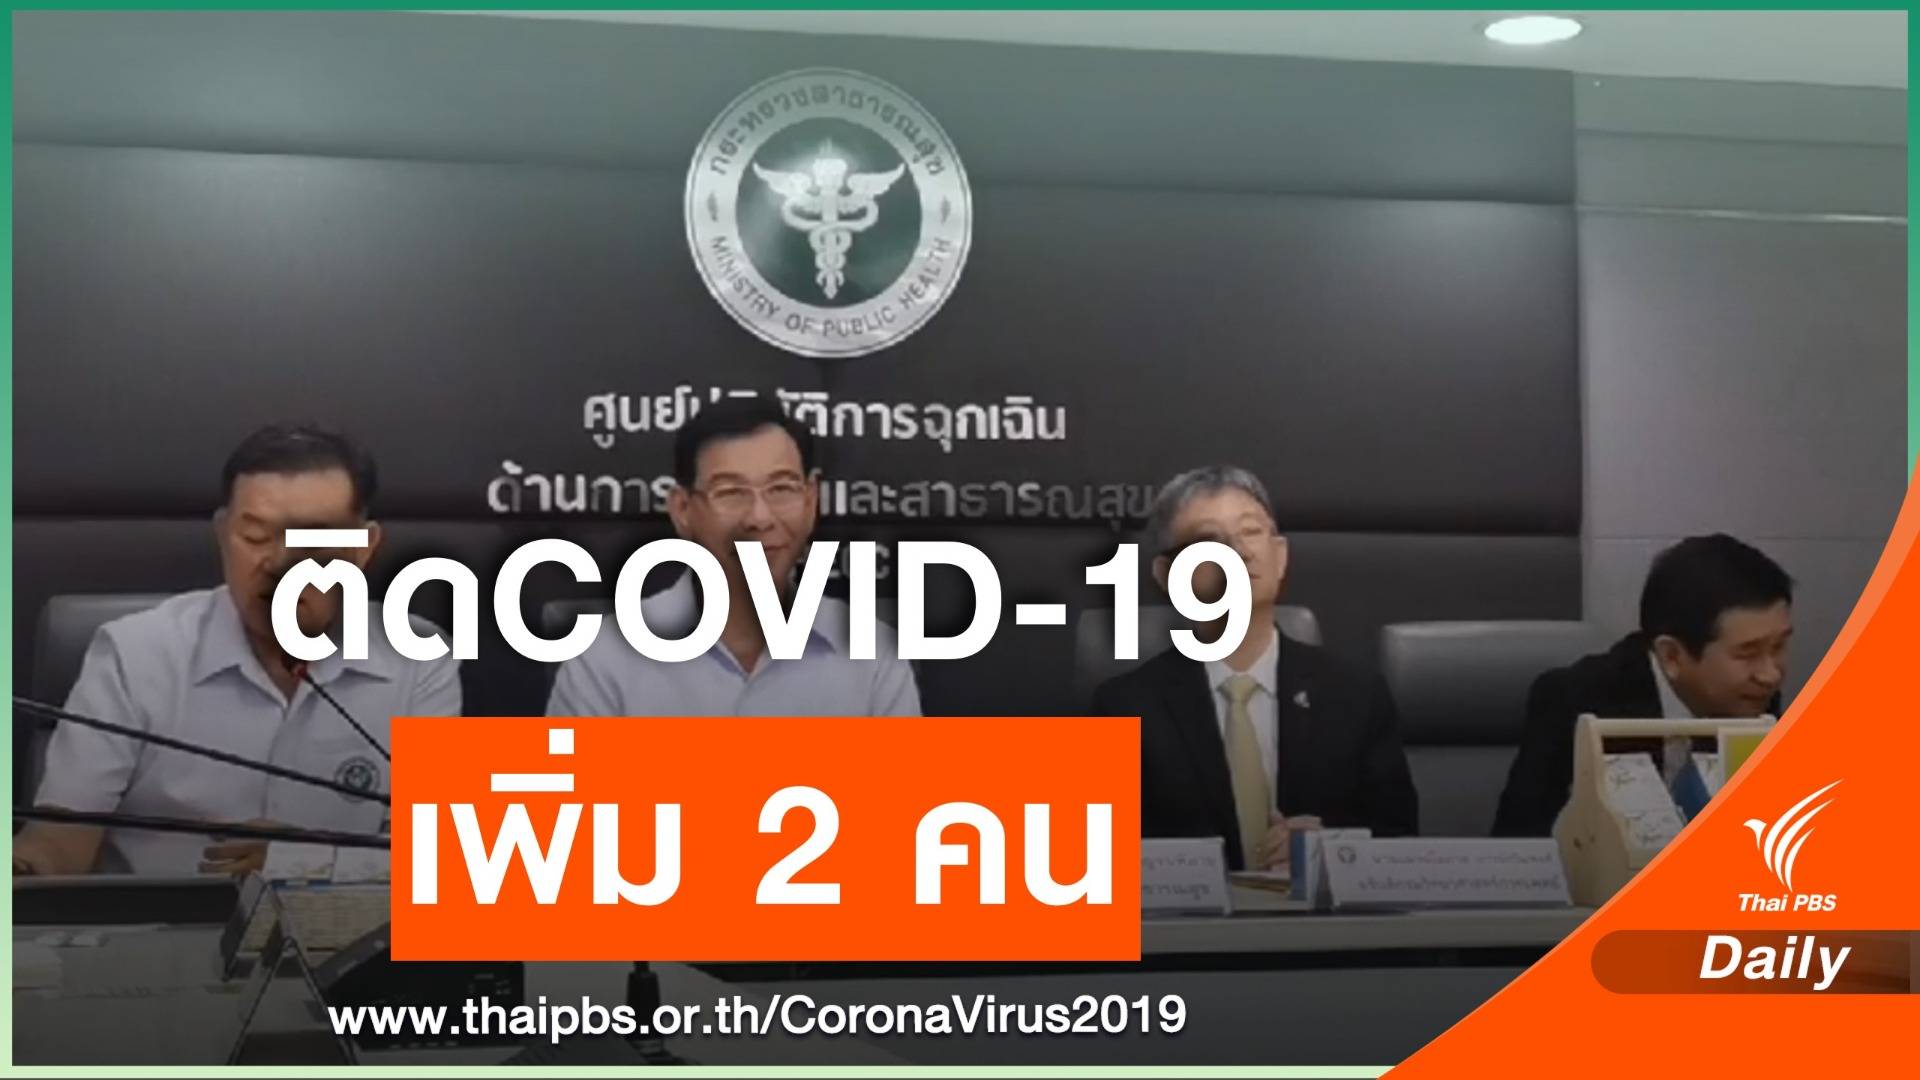 สธ.พบคนไทยติดไวรัสCOVID-19 เพิ่ม 2 คน 